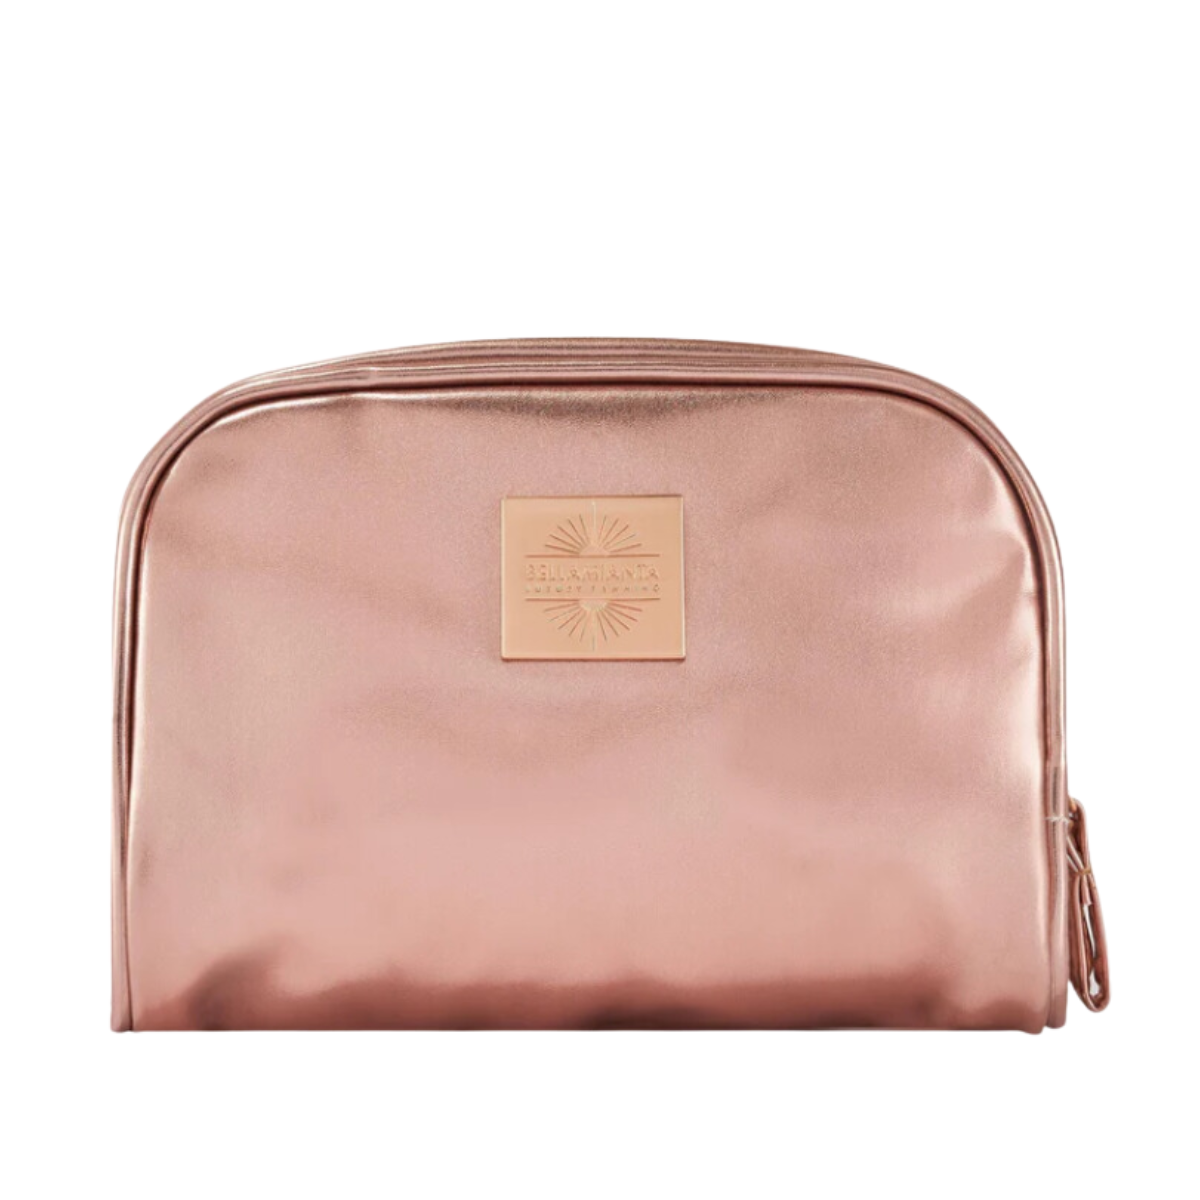 Bellamianta Rose Gold Cosmetic Bag